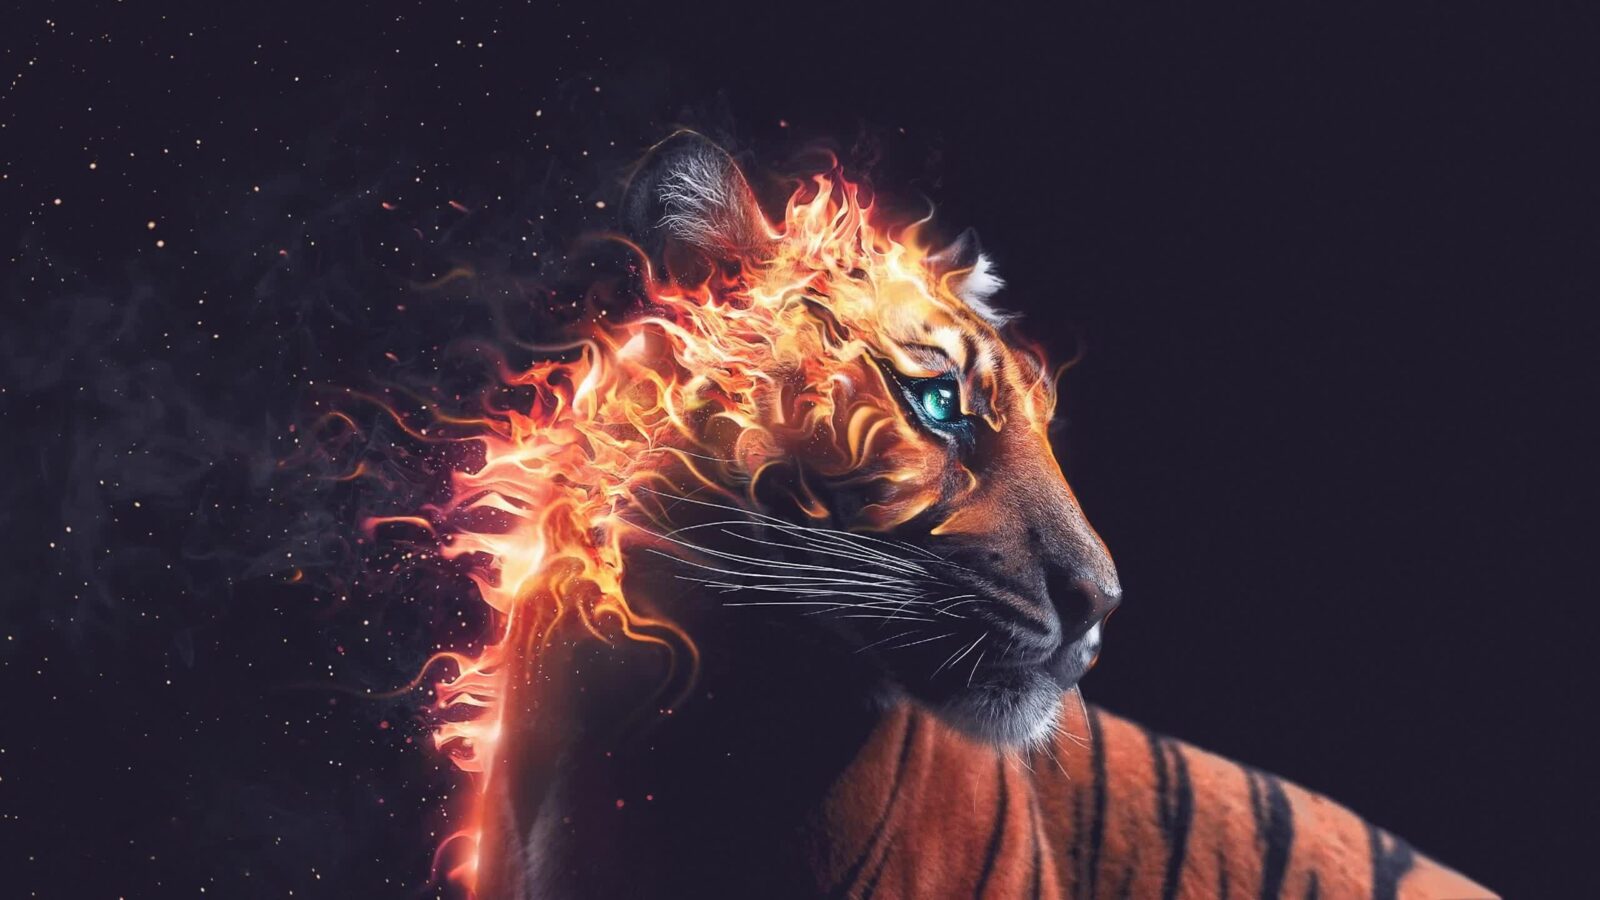 LiveWallpapers4Free.com | Fantasy Tiger in flames / Fire Mane - Live Desktop Wallpaper